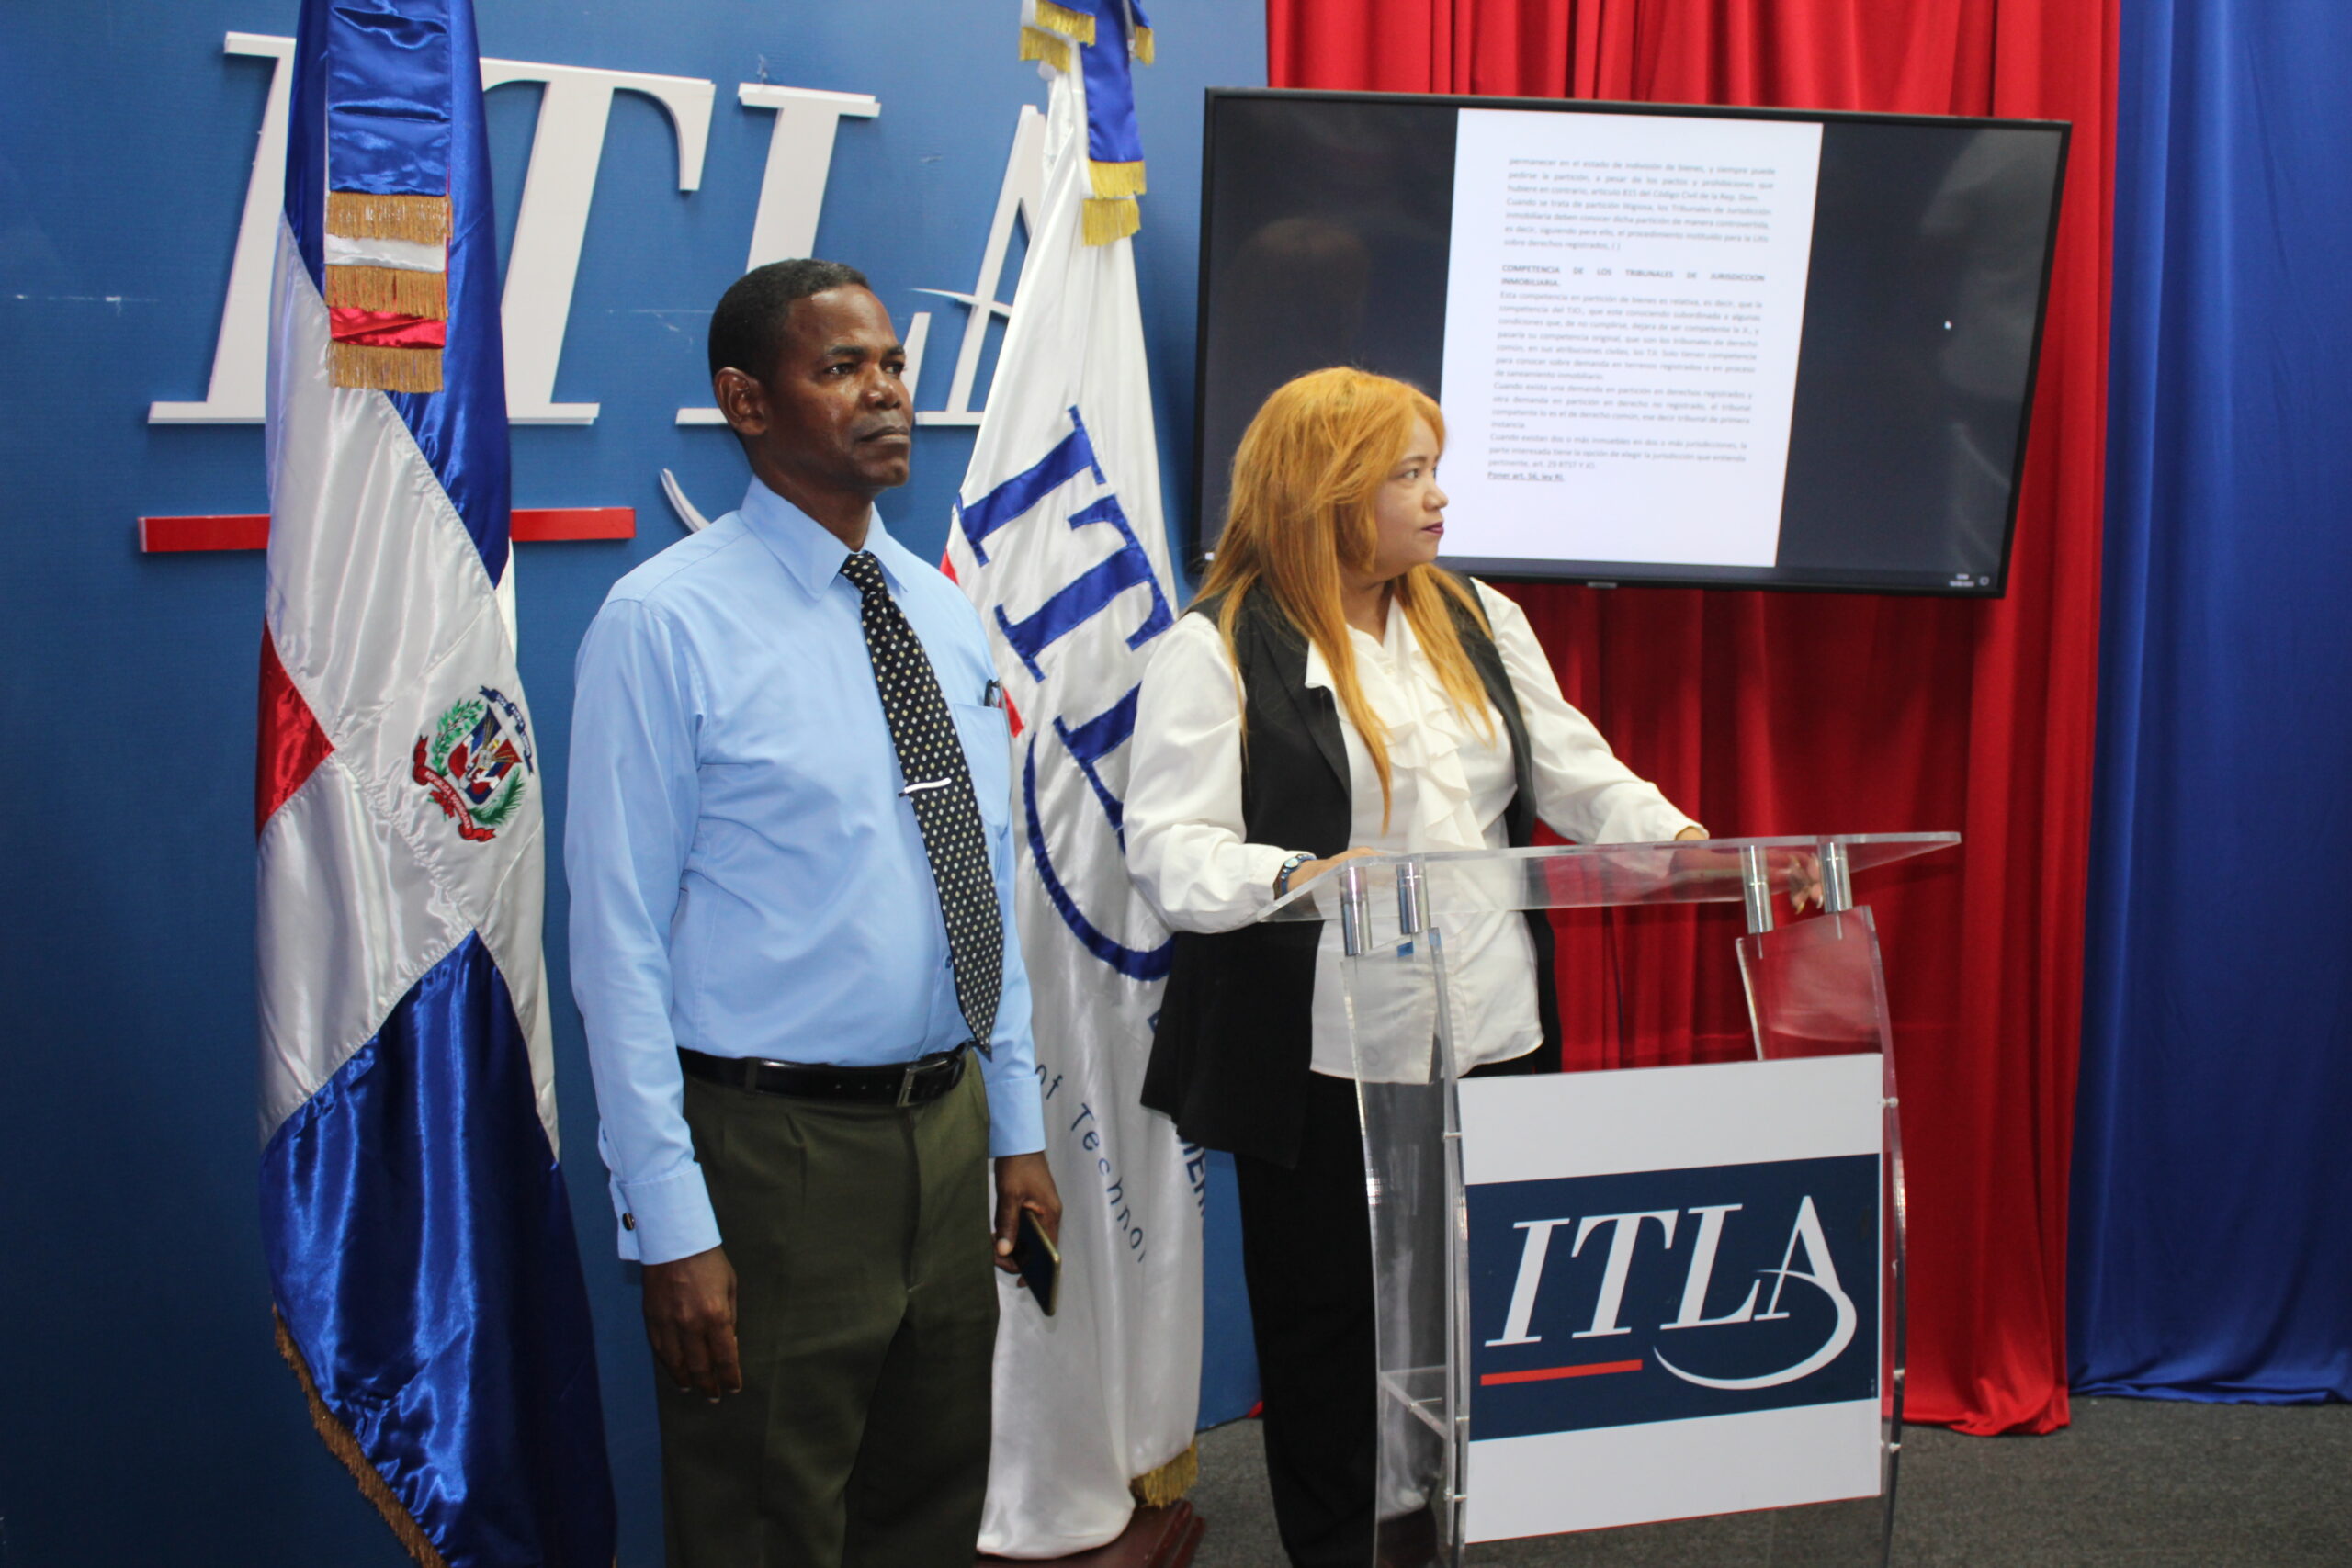 El Colegio de Abogados de la Republica Dominicana concluyó este sábado el taller sobre compra, venta y transferencia inmobiliaria a miembros de La Caleta. 